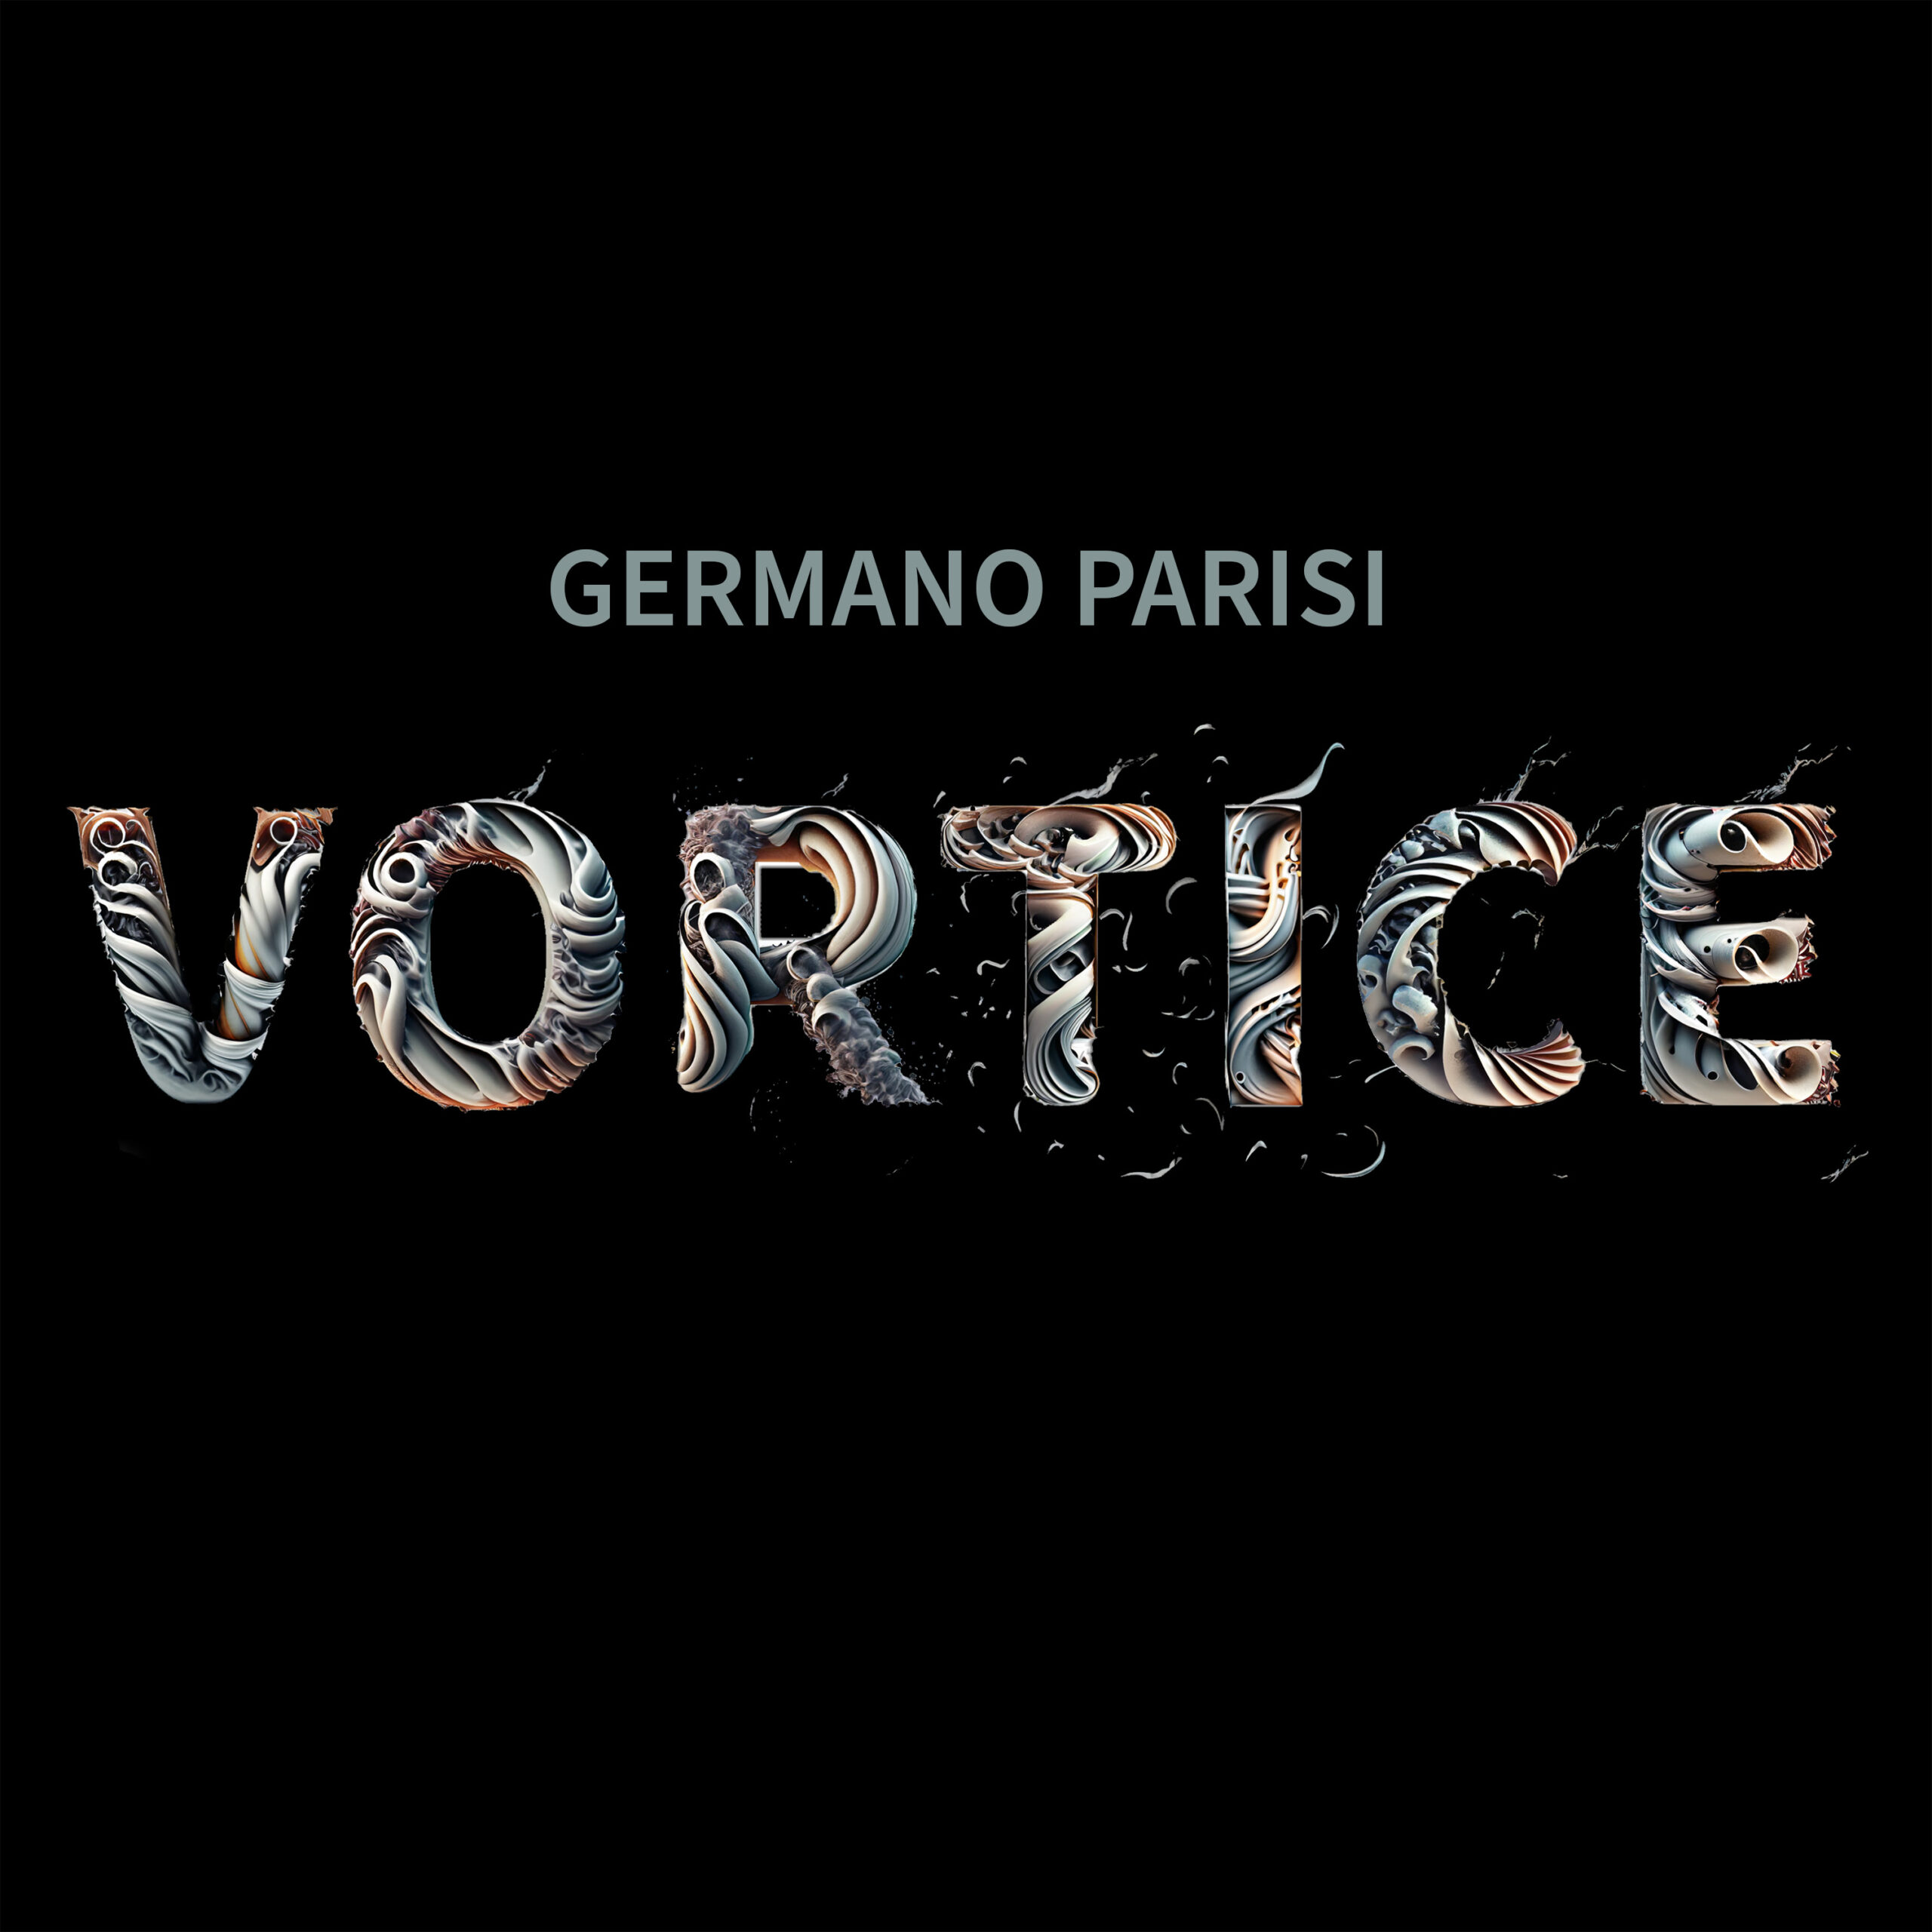 Germano Parisi: esce il nuovo singolo “Vortice”